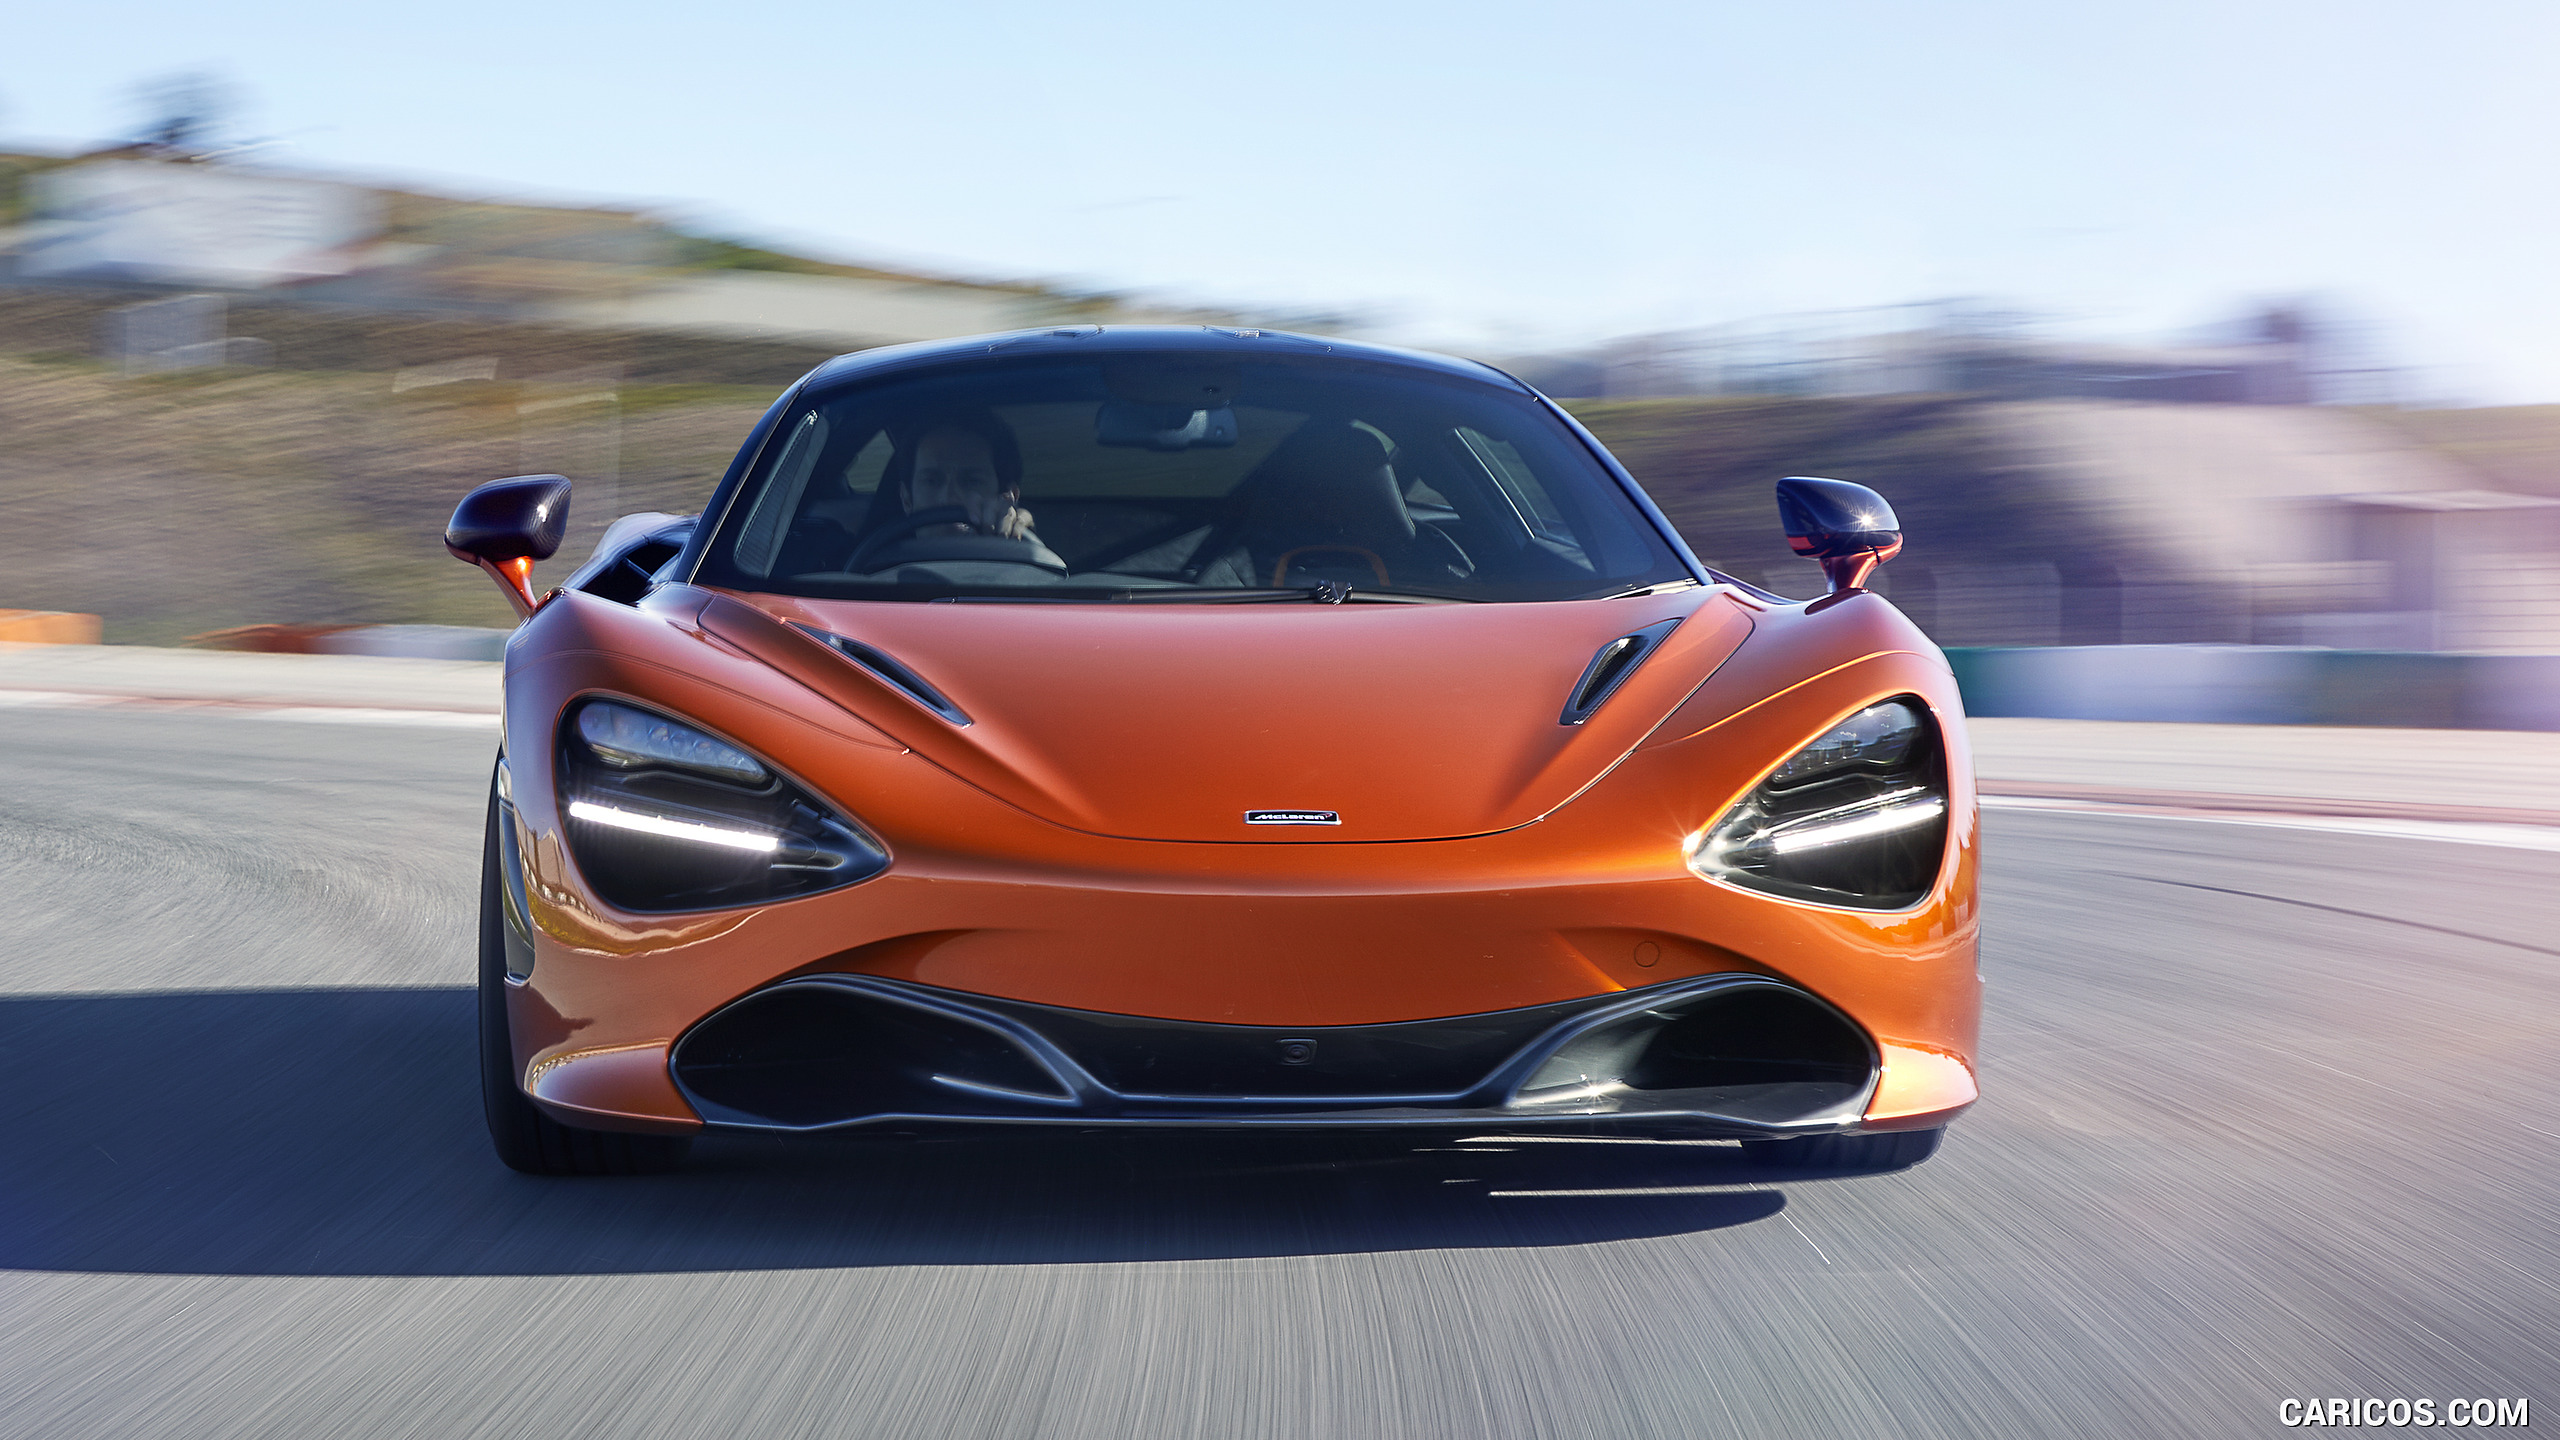 2018 McLaren 720S - Front, #4 of 95